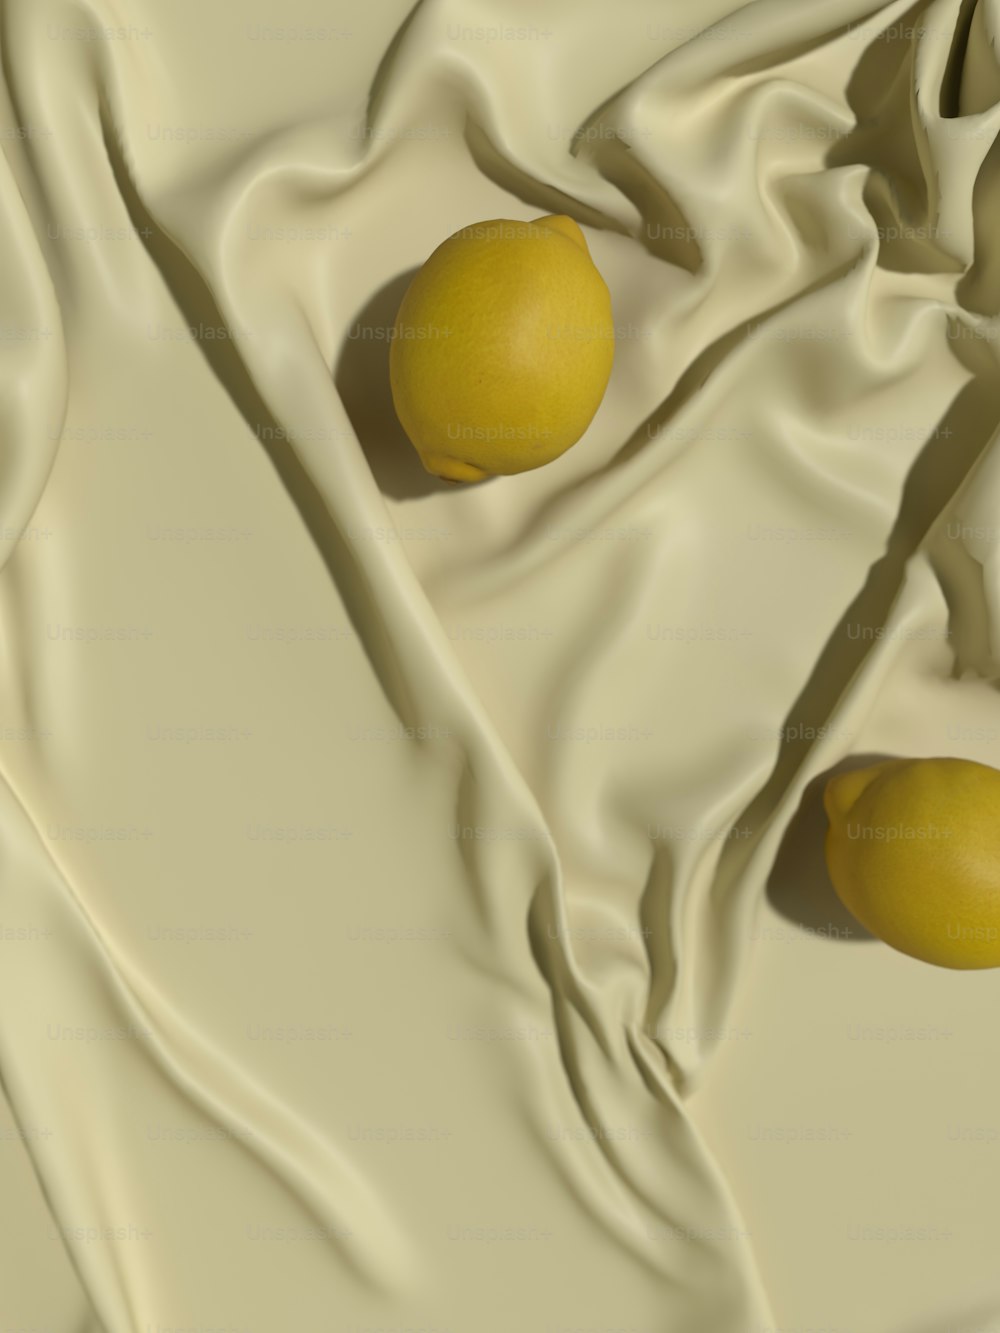 deux citrons assis sur un tissu blanc